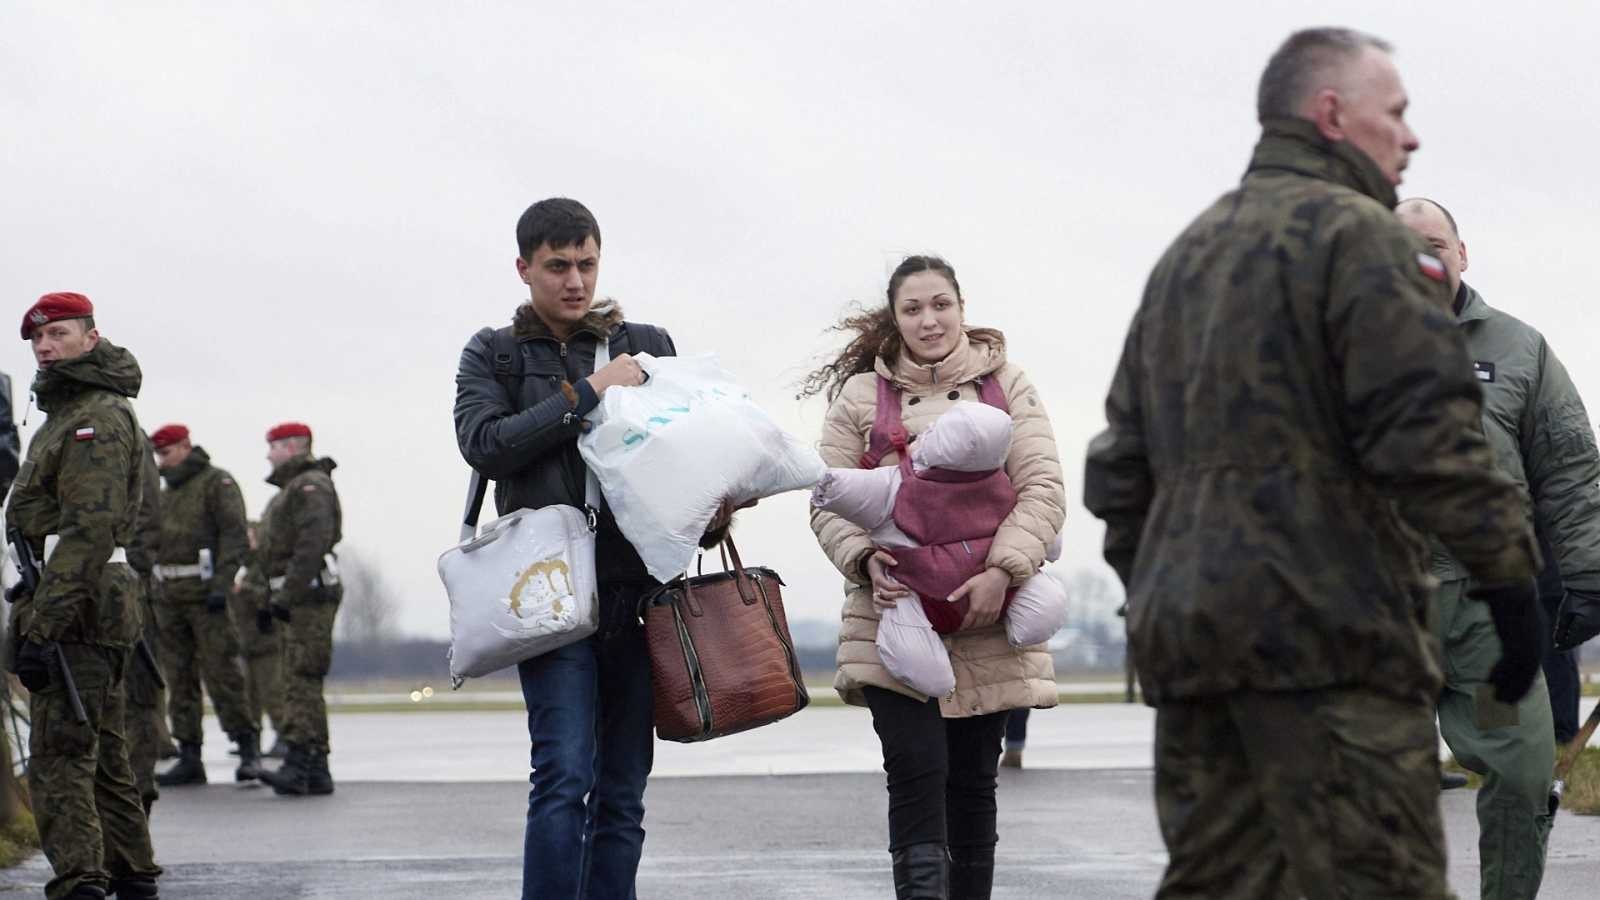 Encuesta de ACNUR: Los refugiados ucranianos quieren trabajar, pero necesitan apoyo sostenido para garantizar su inclusión